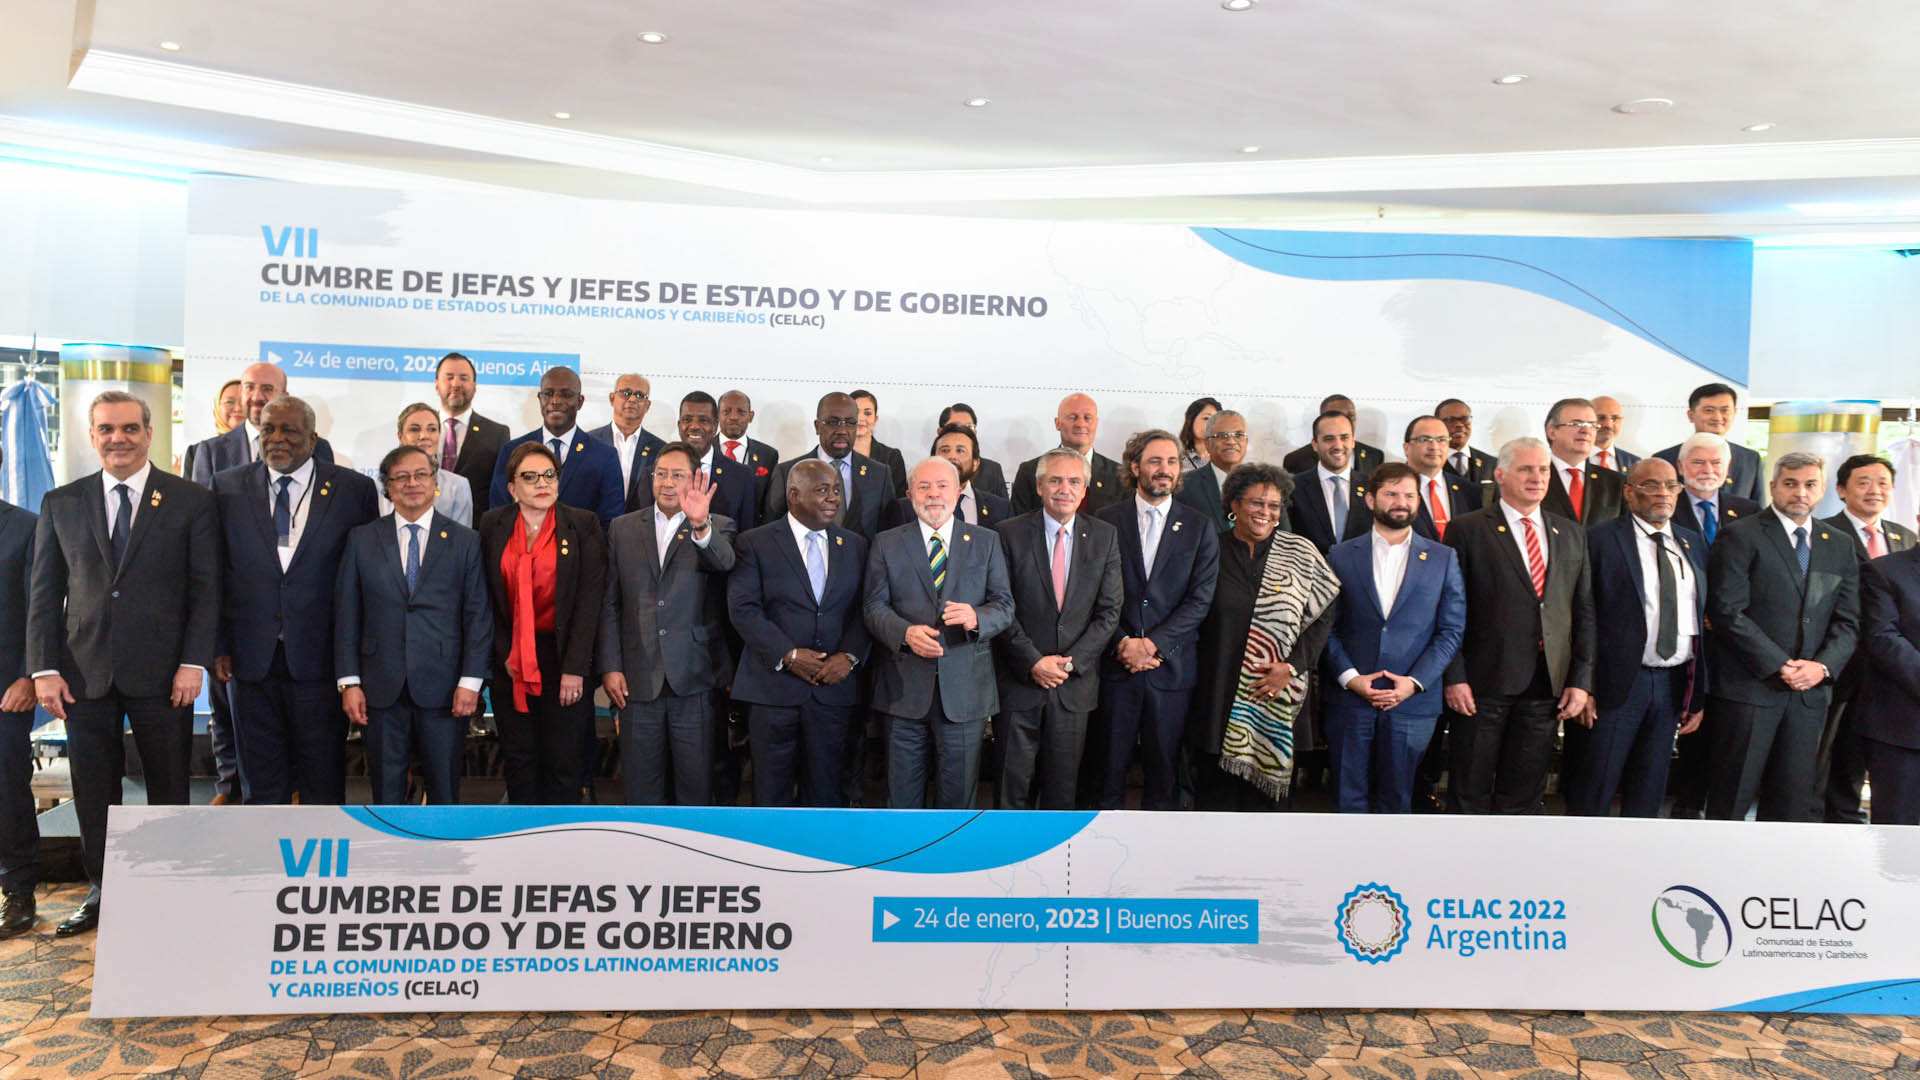 La foto de familia de todos los representantes de América Latina en la CELAC